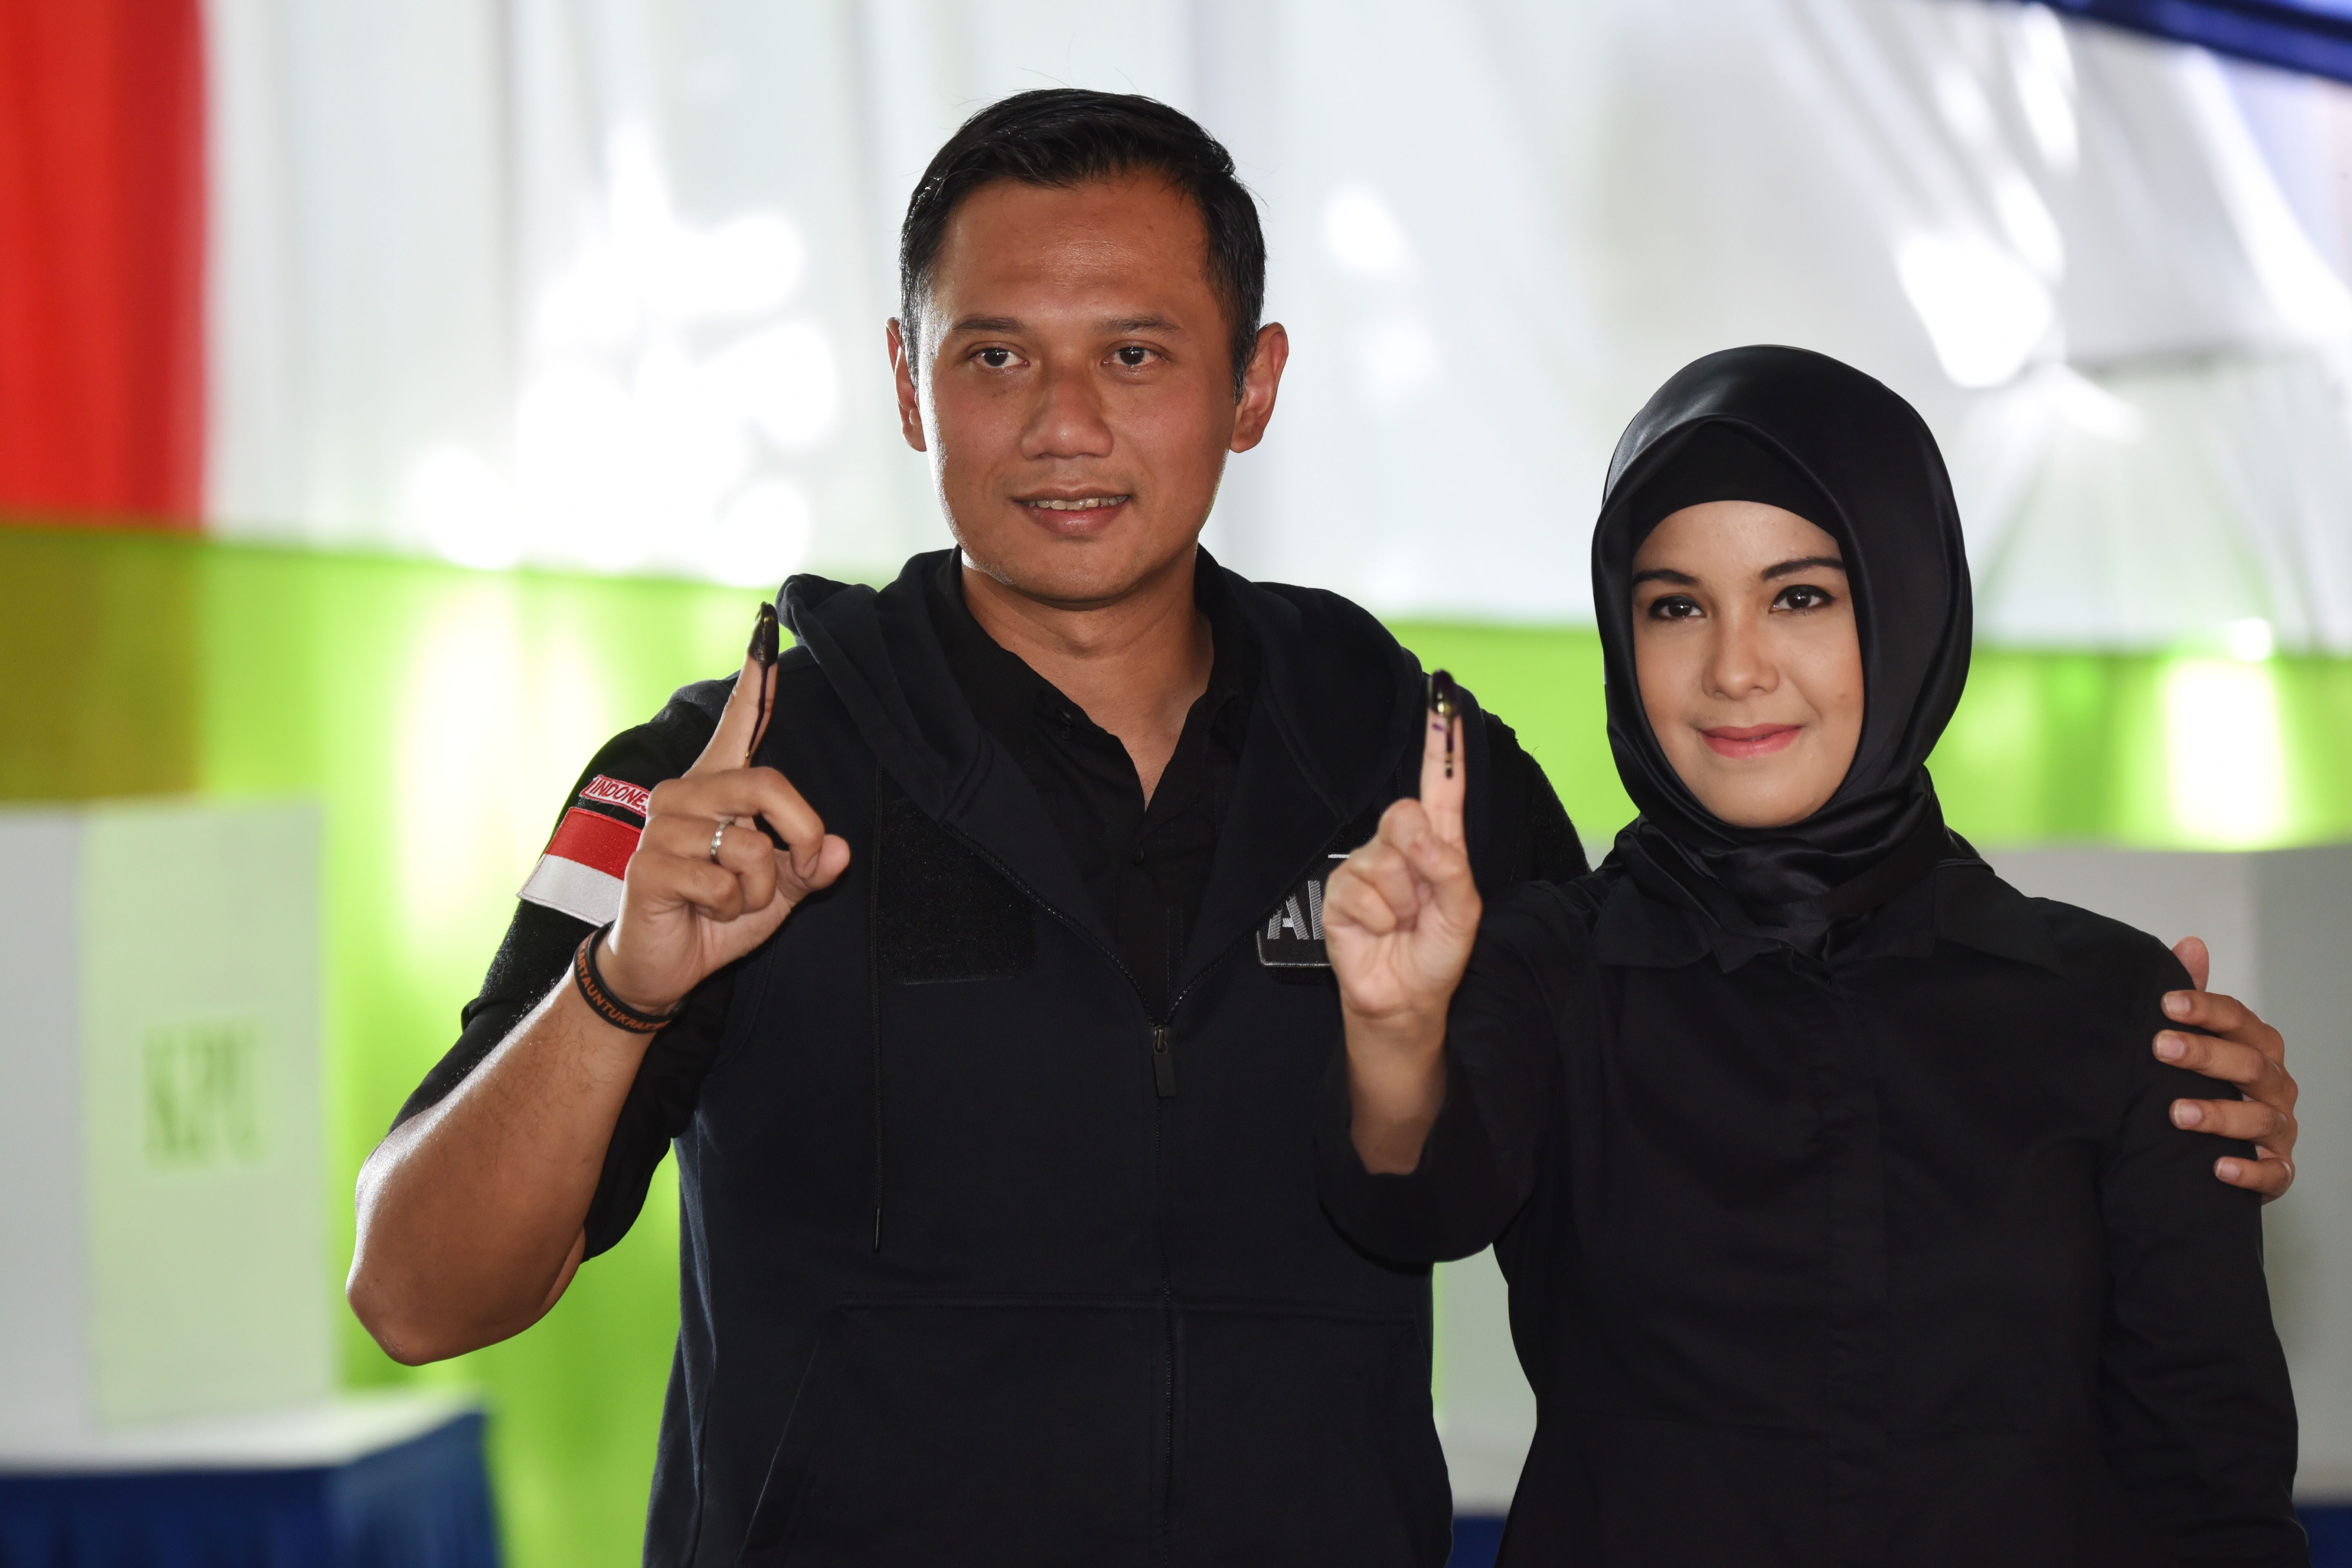 Cagub Agus Harimurti Yudhoyono (kiri) bersama istri, Annisa Pohan (kanan), menunjukkan jari yang telah dicelup tinta usai mengikuti proses pencoblosan Pilkada DKI Jakarta di TPS 6, Rawa Barat, pada 15 Februari 2017. Foto oleh Akbar Nugroho Gumay/Antara 